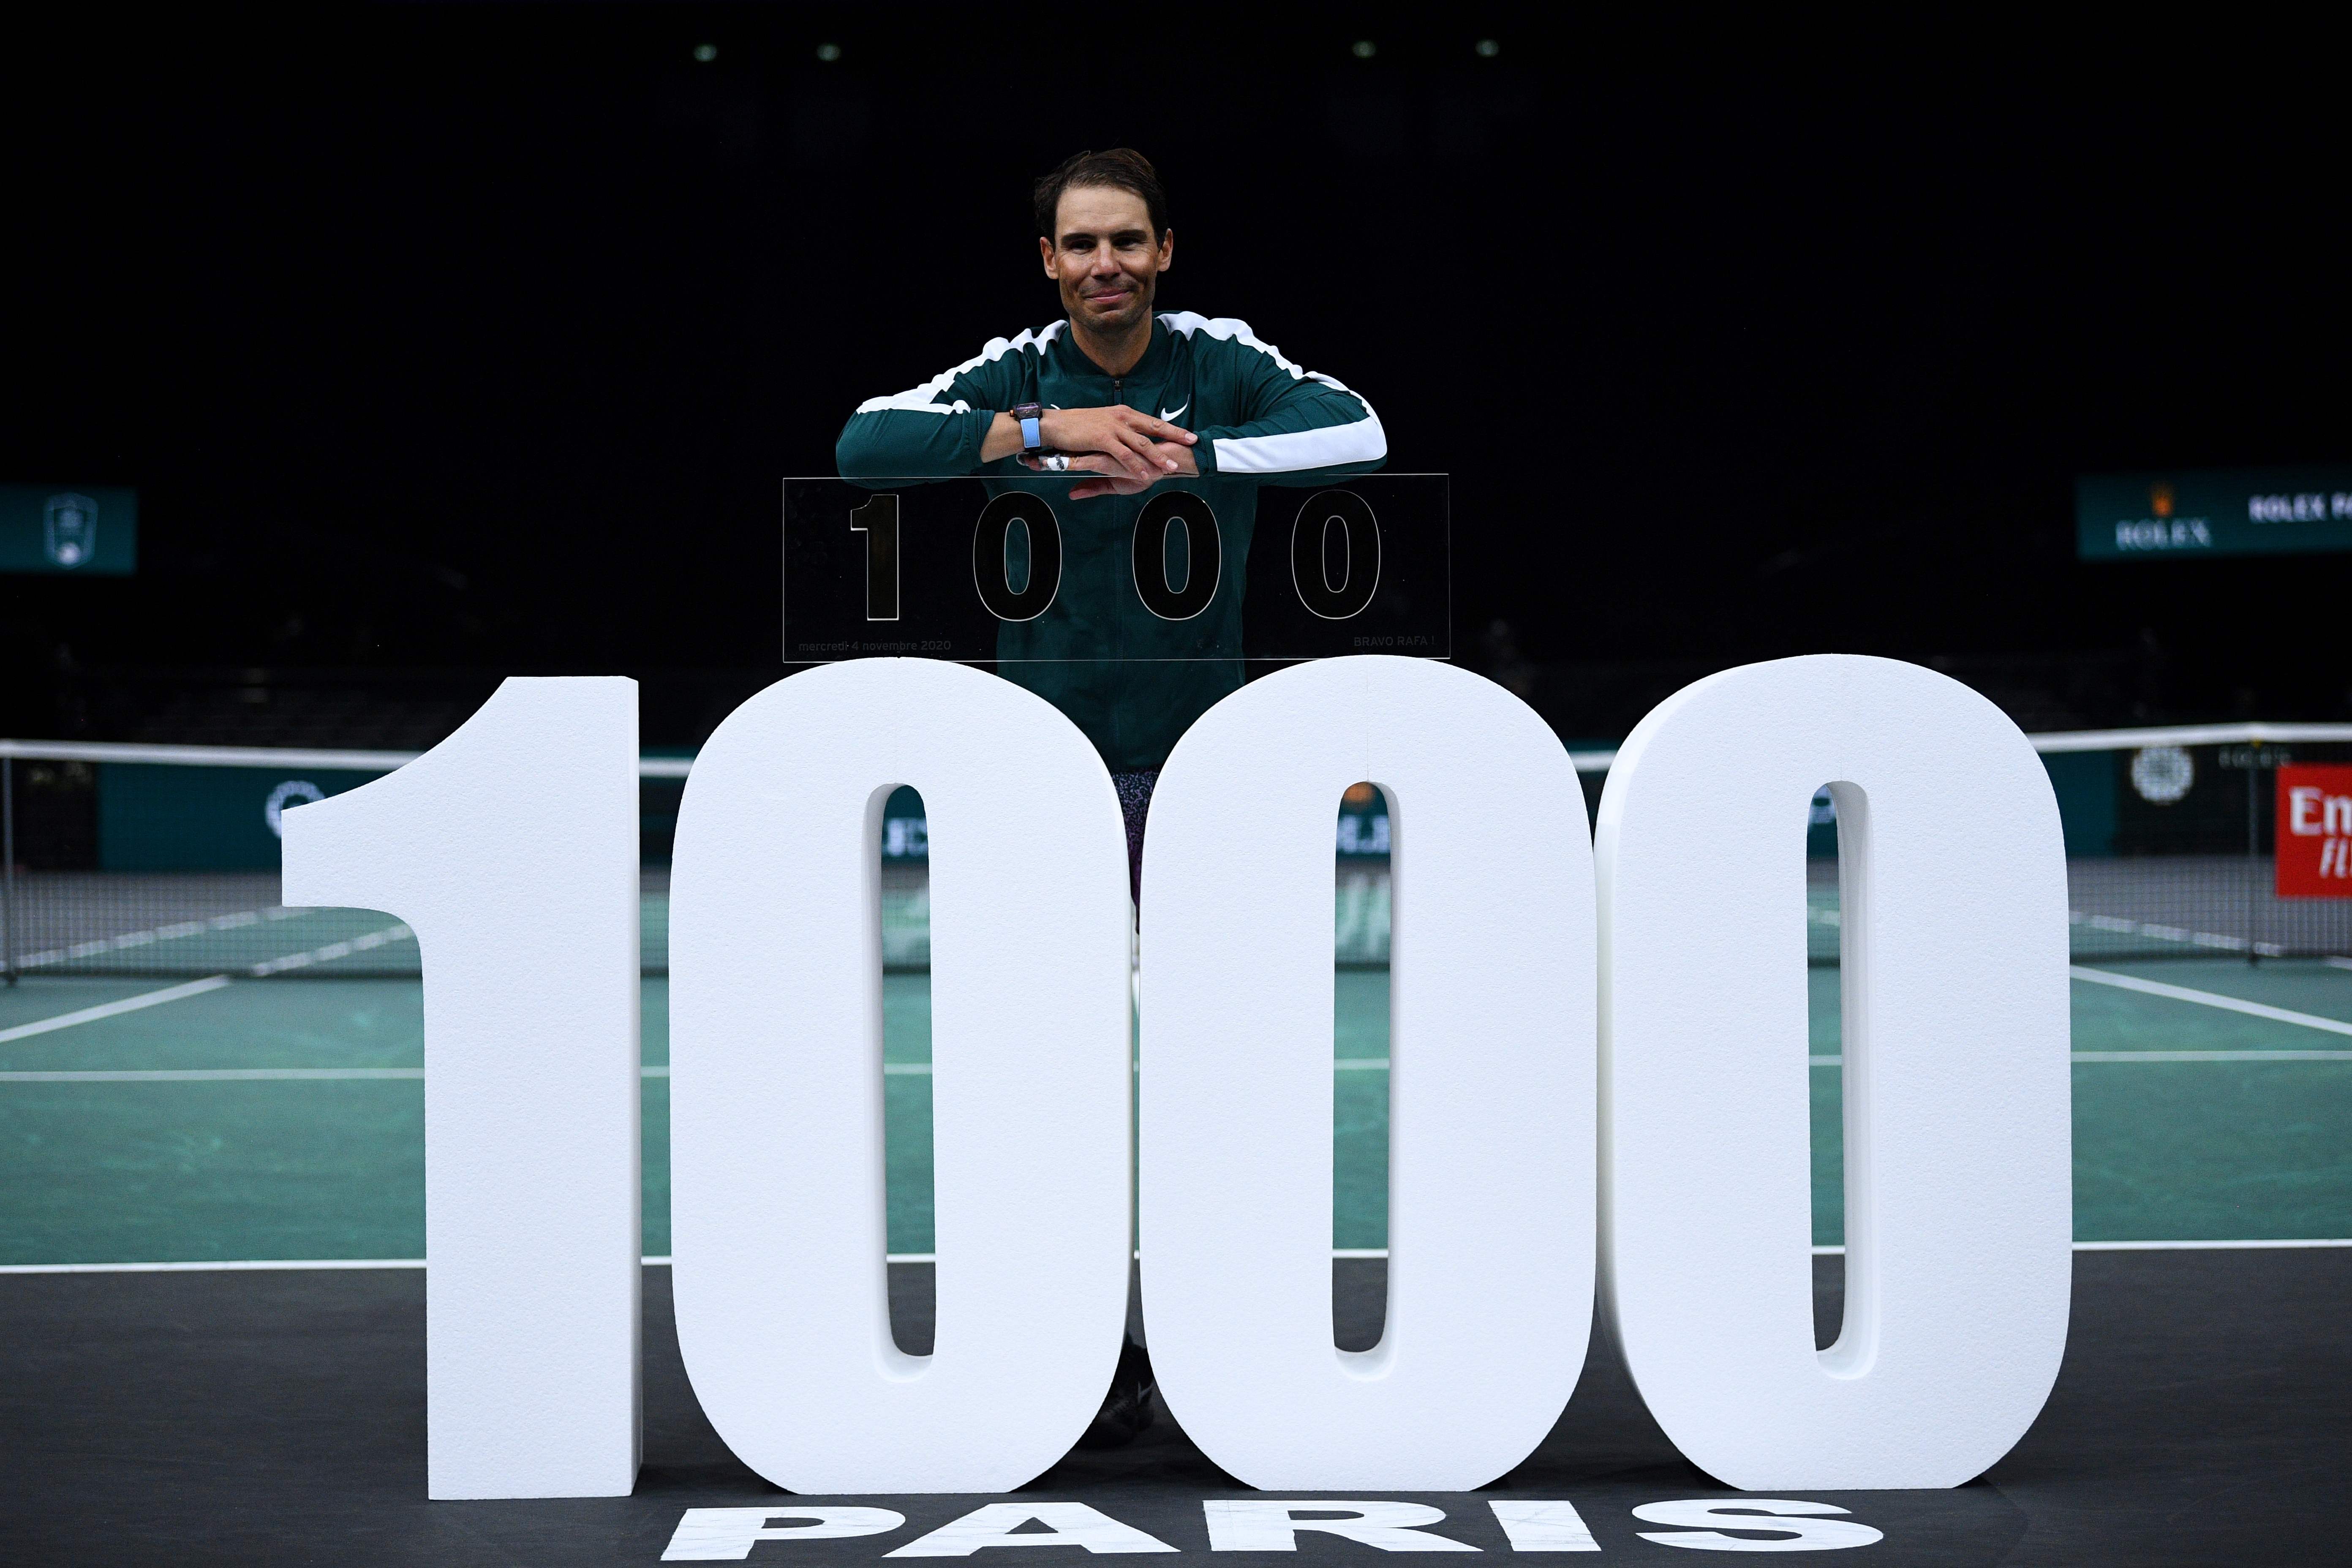 Masters 1000 de Paris: Nadal arrache sa 1000e victoire